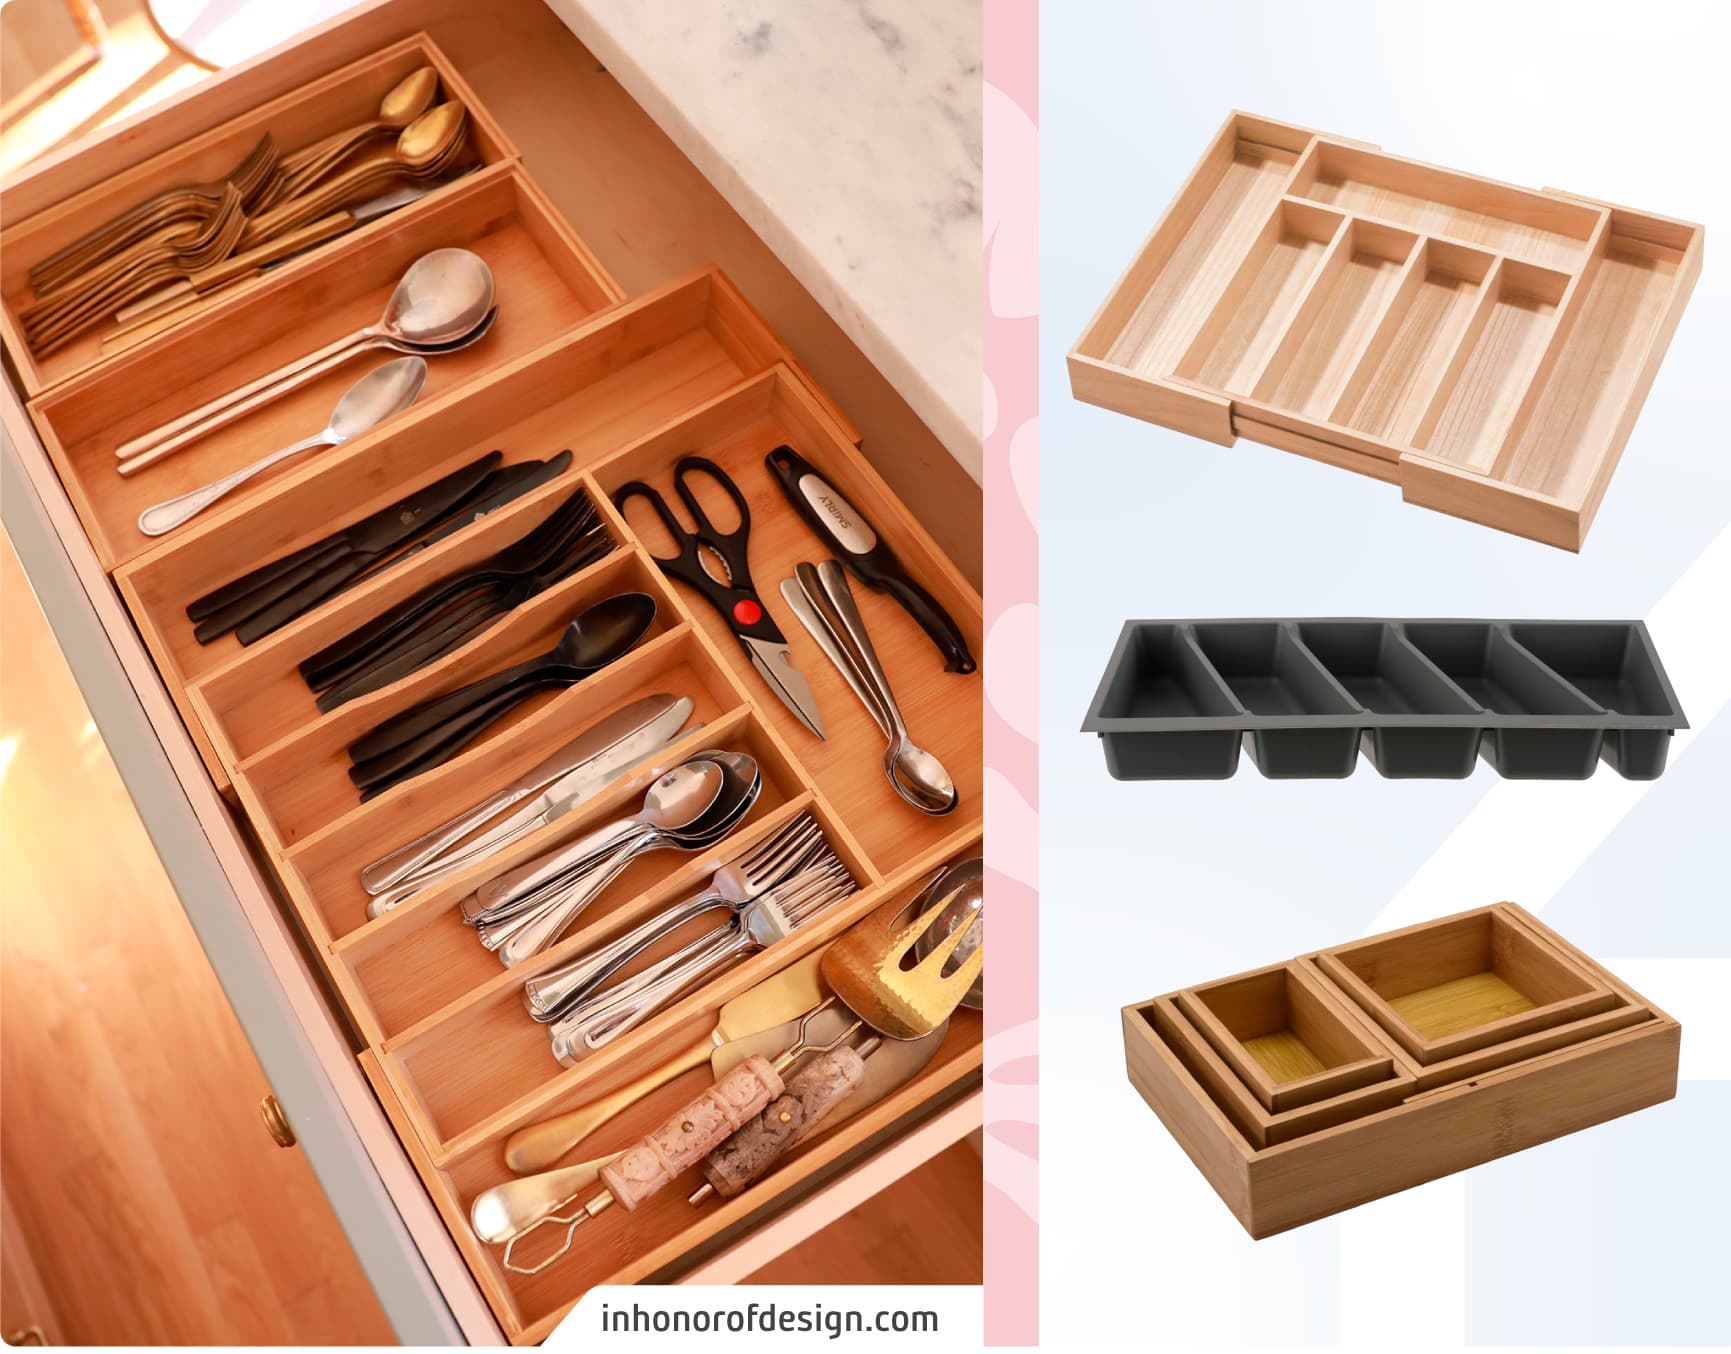 Moodboard Sodimac con foto de un cajón de cocina con organizador para cubiertos. Los productos Sodimac son organizadores de cocina y cubiertos de madera y metal